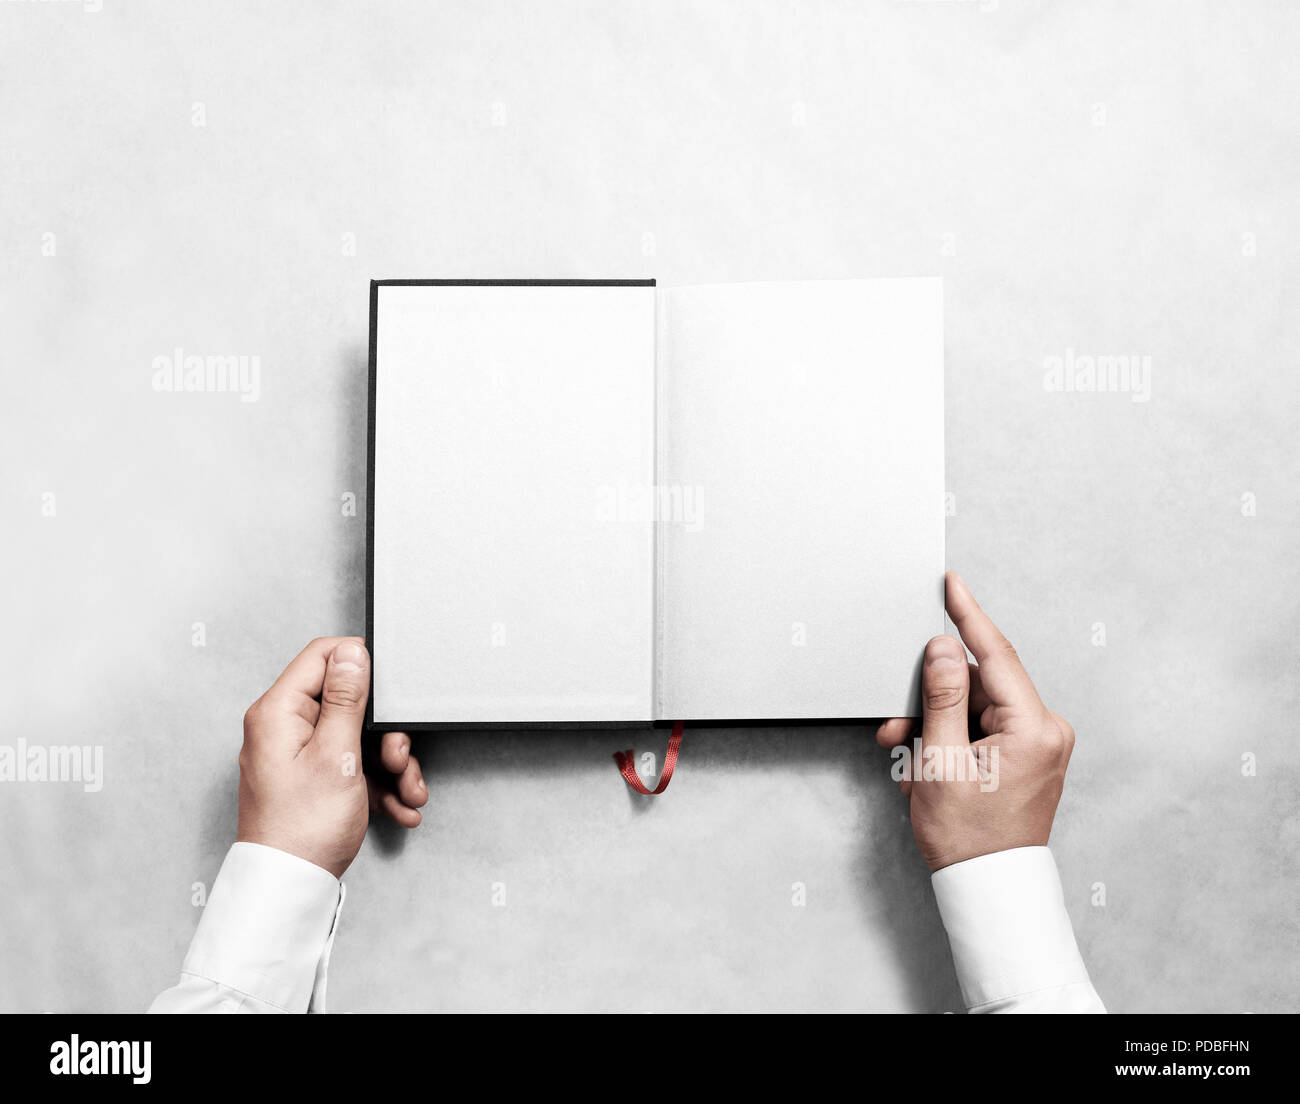 Hand leer geöffnete Buch mock up mit weißen Hälfte Titel. Person lesen leer Taschenbuch mockup. Schwarz notebook Vorlage. Publikationsdesign beim Durchblättern Mann. Lehrbuch mit Lesezeichen. Stockfoto